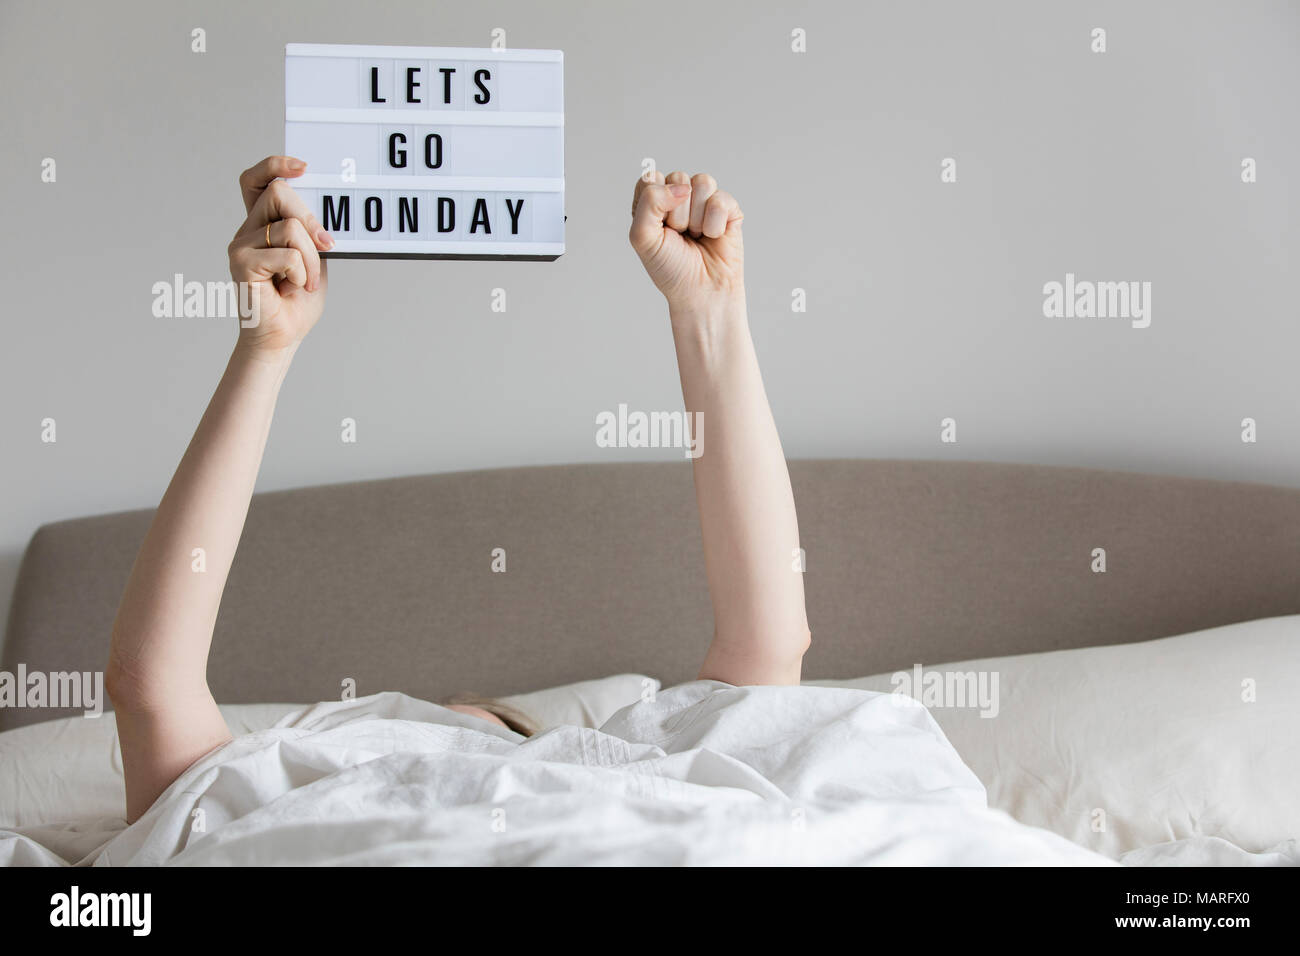 Mujeres en la cama bajo las sábanas sosteniendo una Lets go lunes firman  Fotografía de stock - Alamy